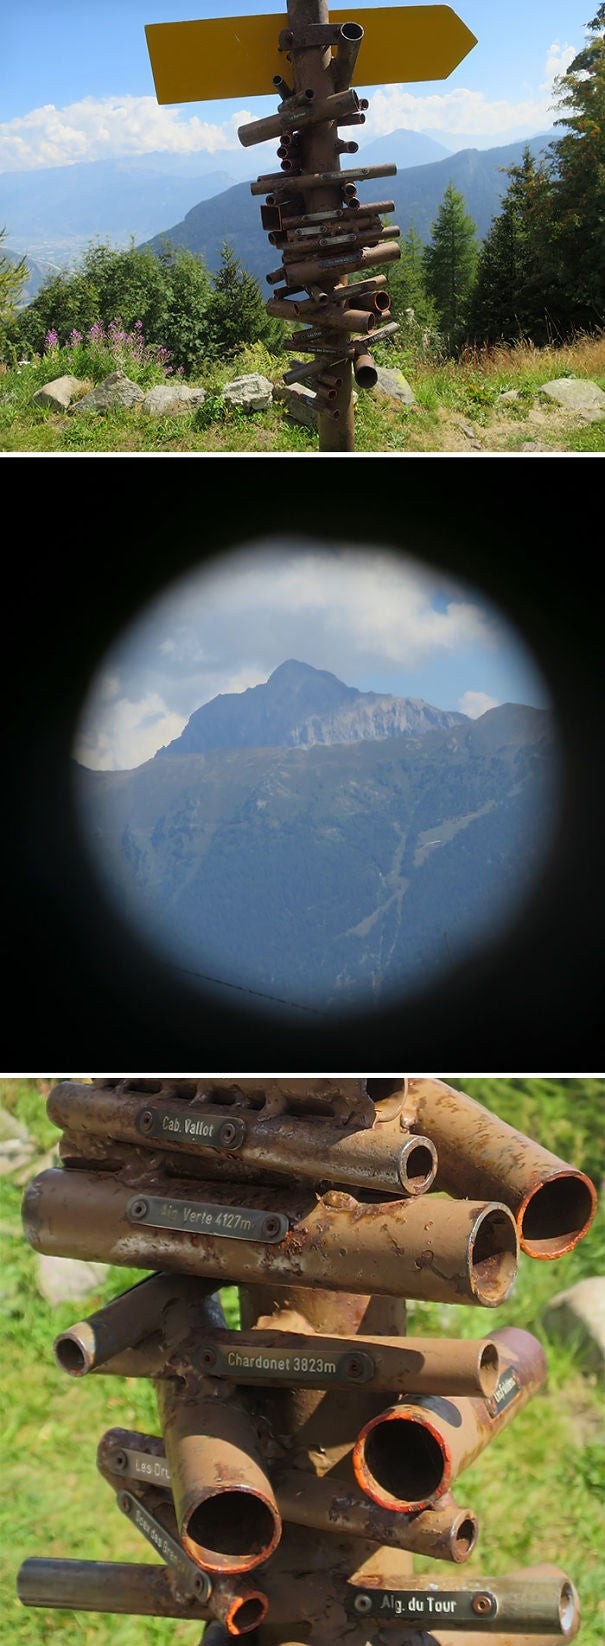 3. In Svizzera, guardando in ognuno di questi tubi, si può vedere da vicino una montagna diversa!